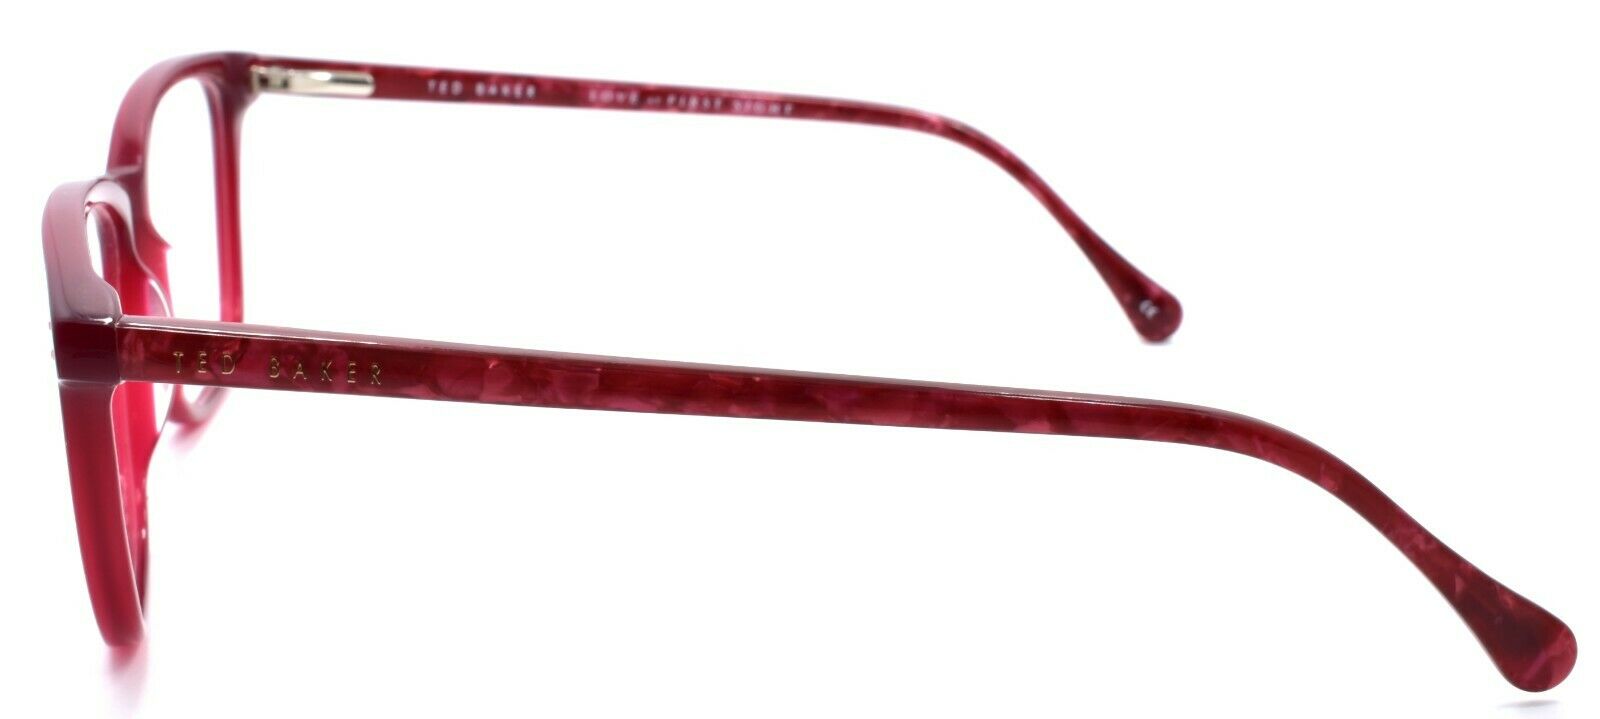 3-Ted Baker Maple 9131 205 Women's Eyeglasses Frames 51-15-140 Burgundy-4894327181902-IKSpecs